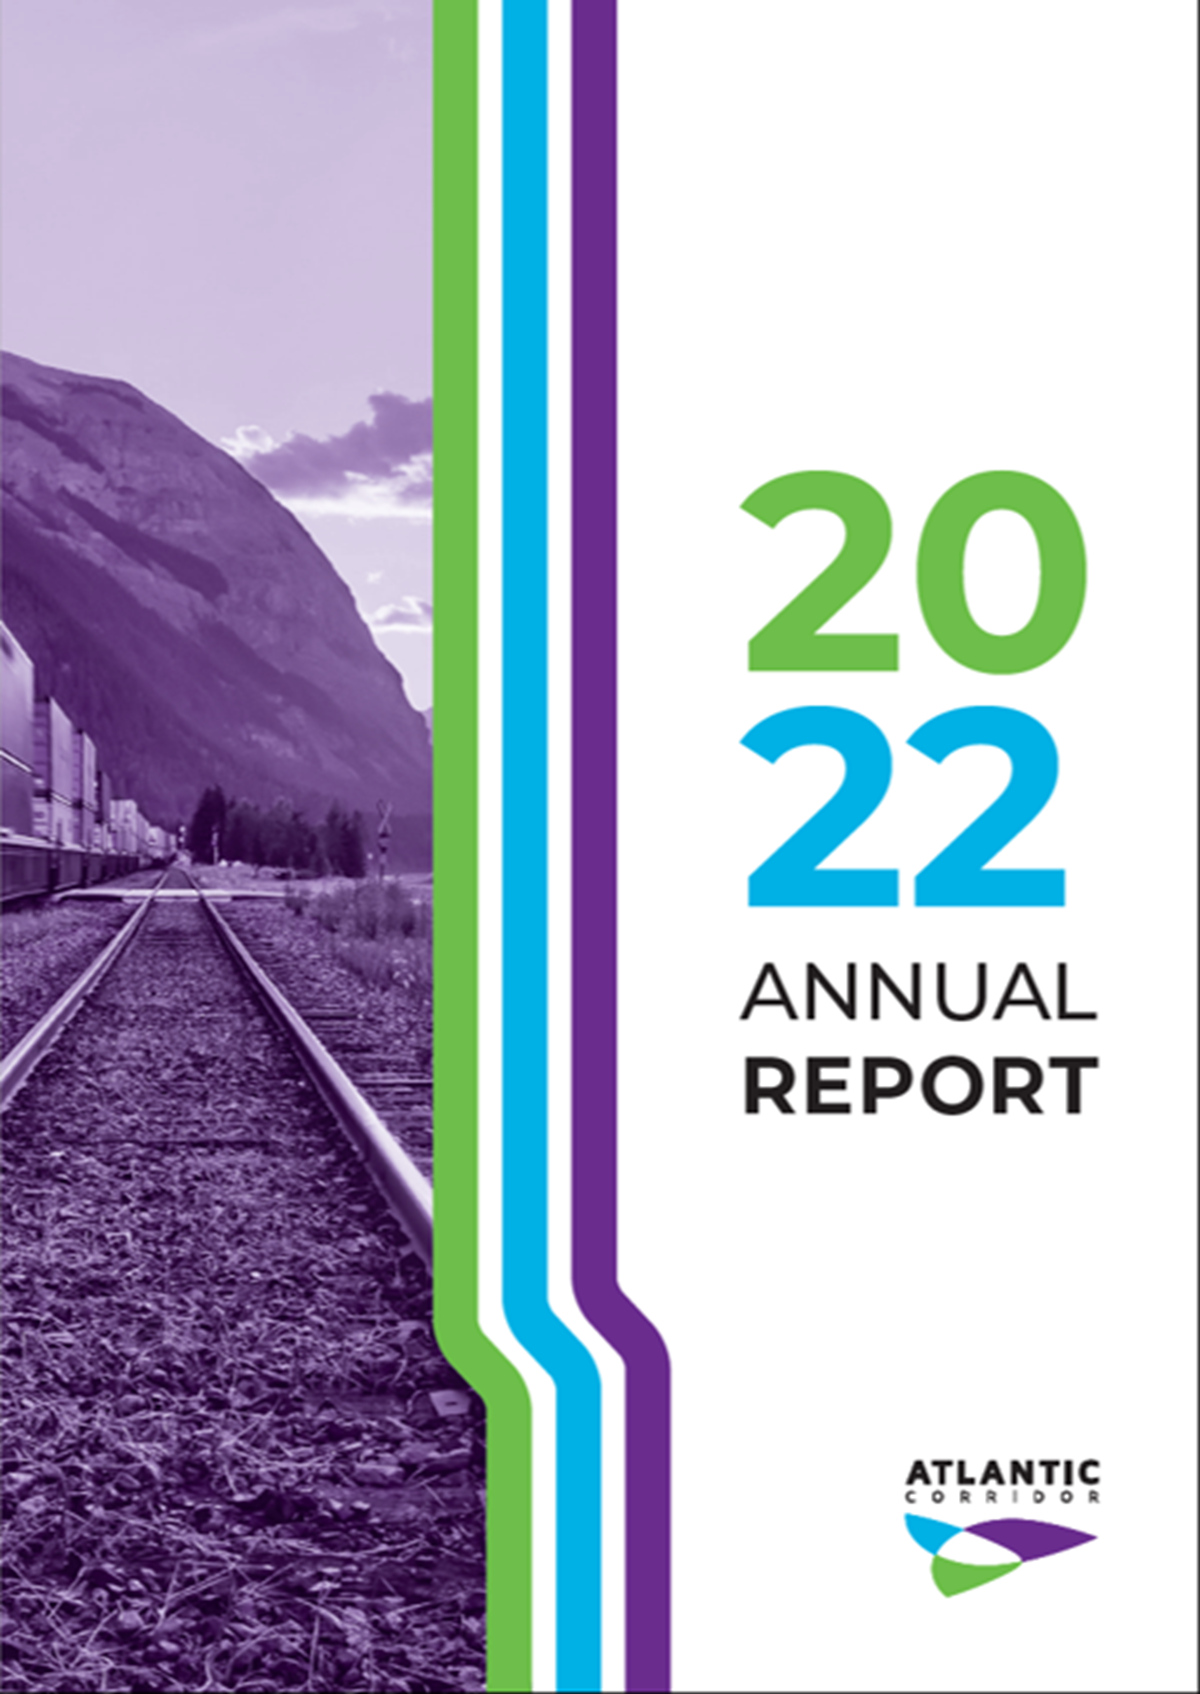 Atlantic Corridor Annual Report 2022